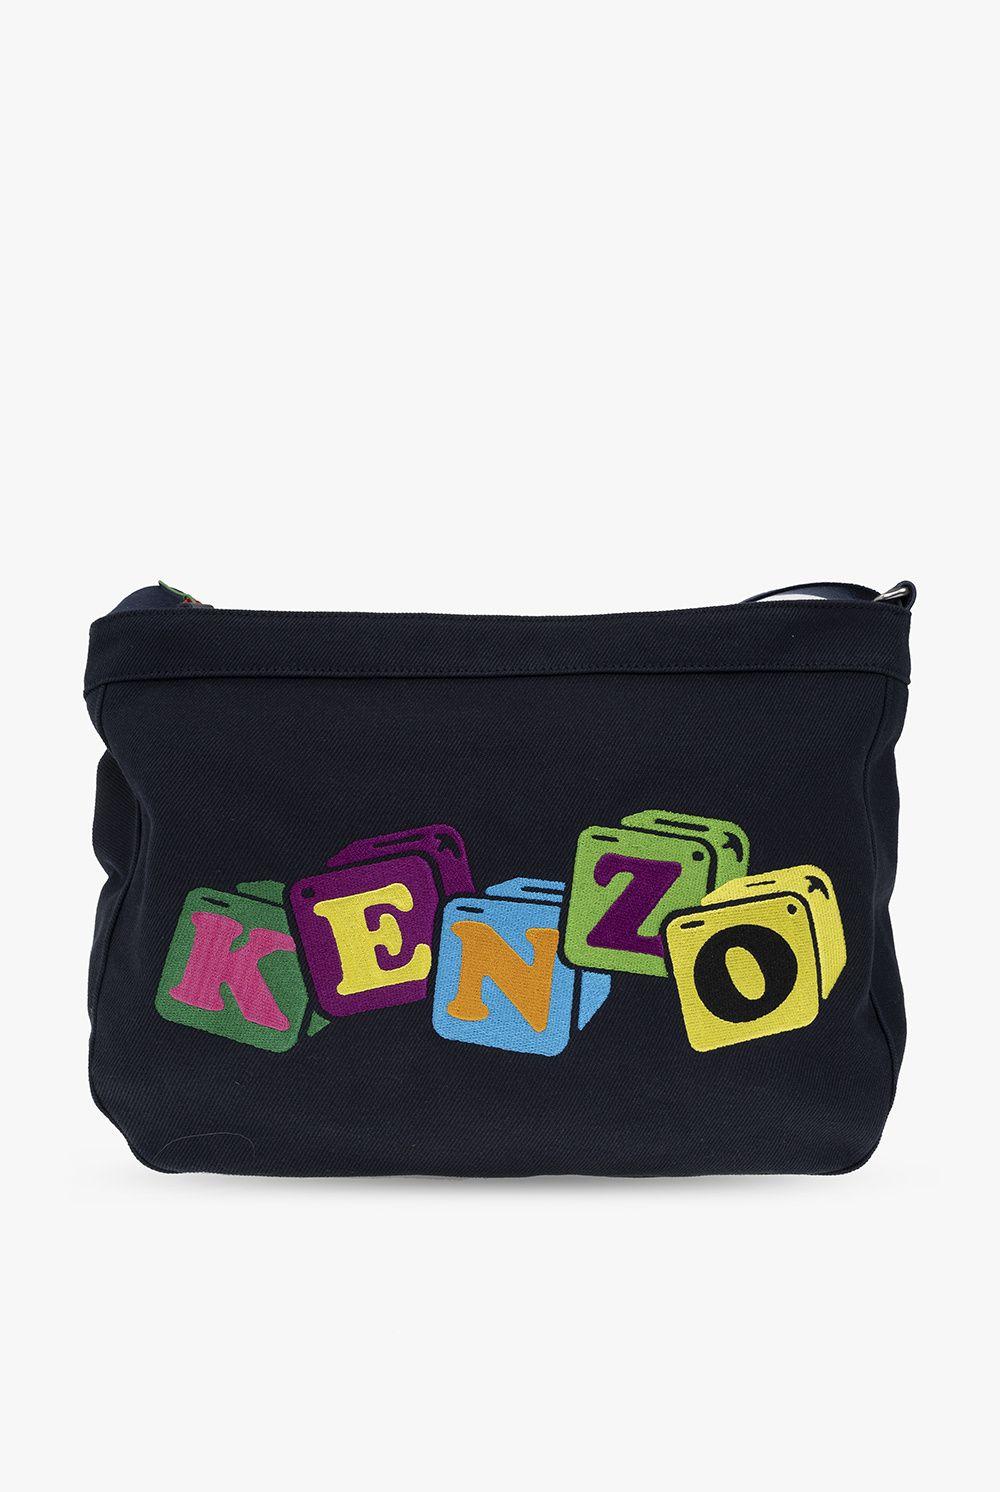 Kenzo Bags for Women - Designer Bags - Farfetch